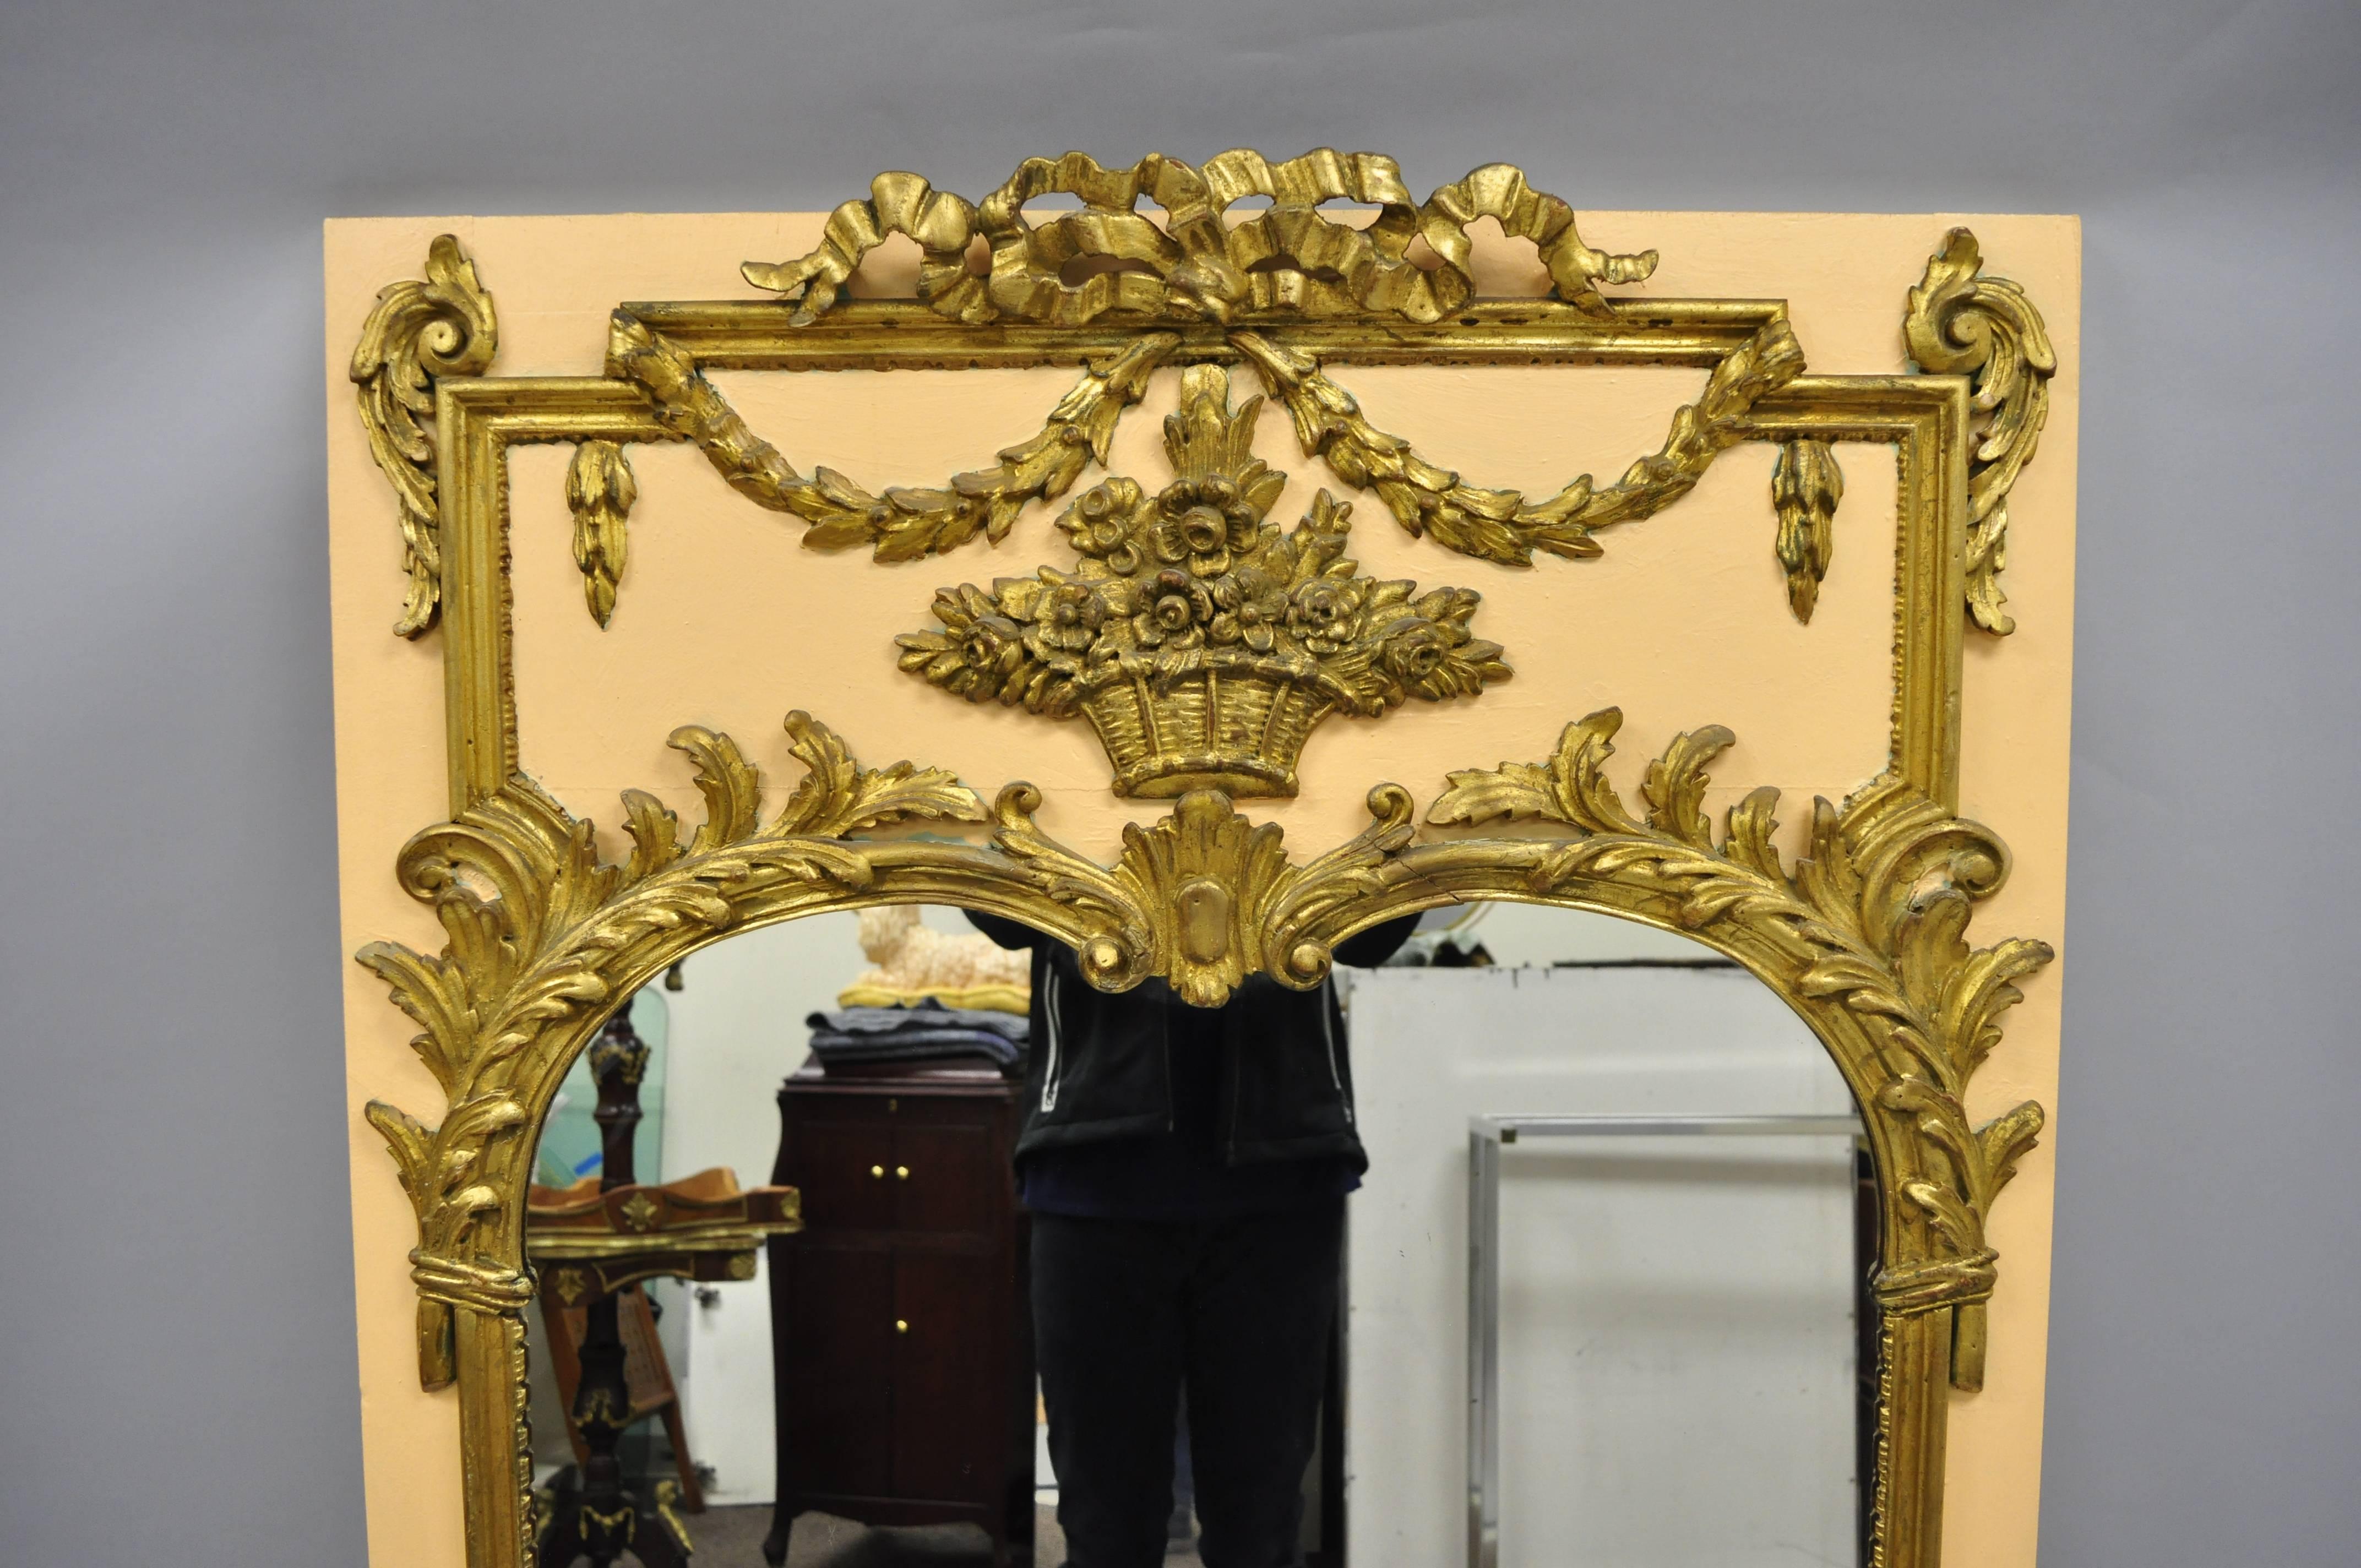 Miroir mural trumeau en bois doré de style Louis XV en pêche et or. L'article présente une finition pêche et or, un bouquet en bois sculpté, un drapé et des volutes de feuilles d'acanthe, un cadre en bois massif, des détails joliment sculptés, un